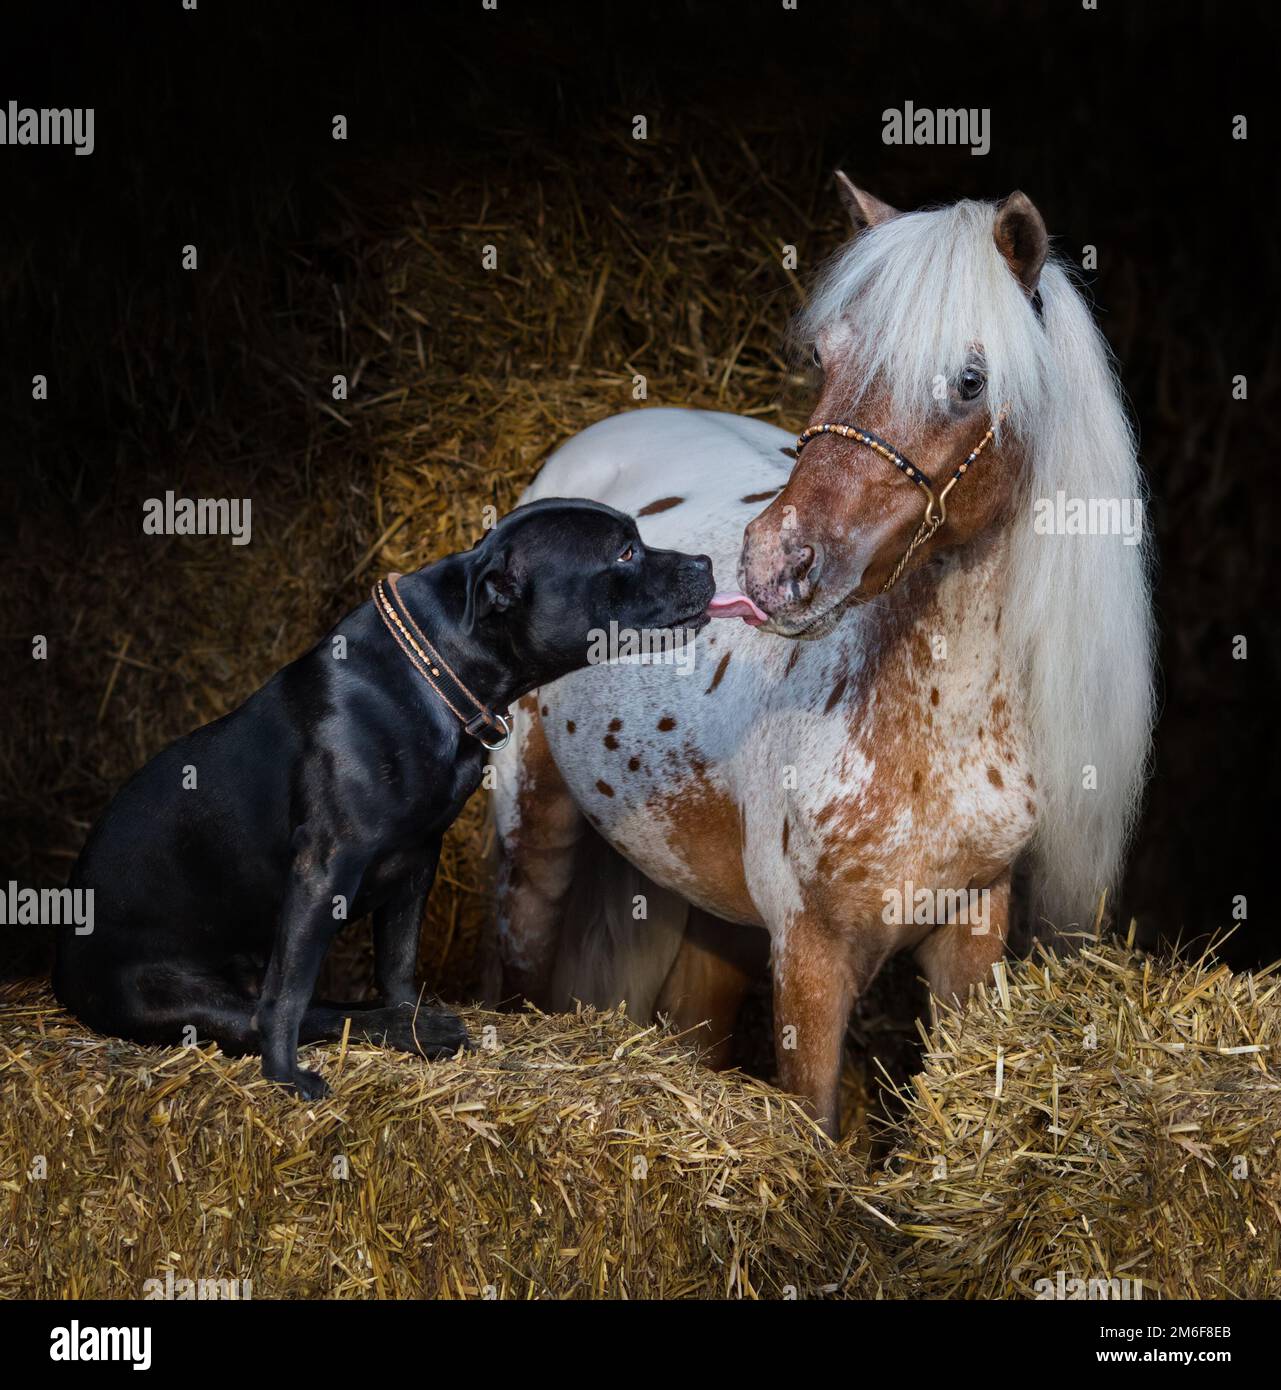 Staffordshire Bull Terrier Hund und Appaloosa amerikanisches Miniaturpferd auf Stroh im Stall. Konzept der Kommunikation verschiedener Tiere. Stockfoto